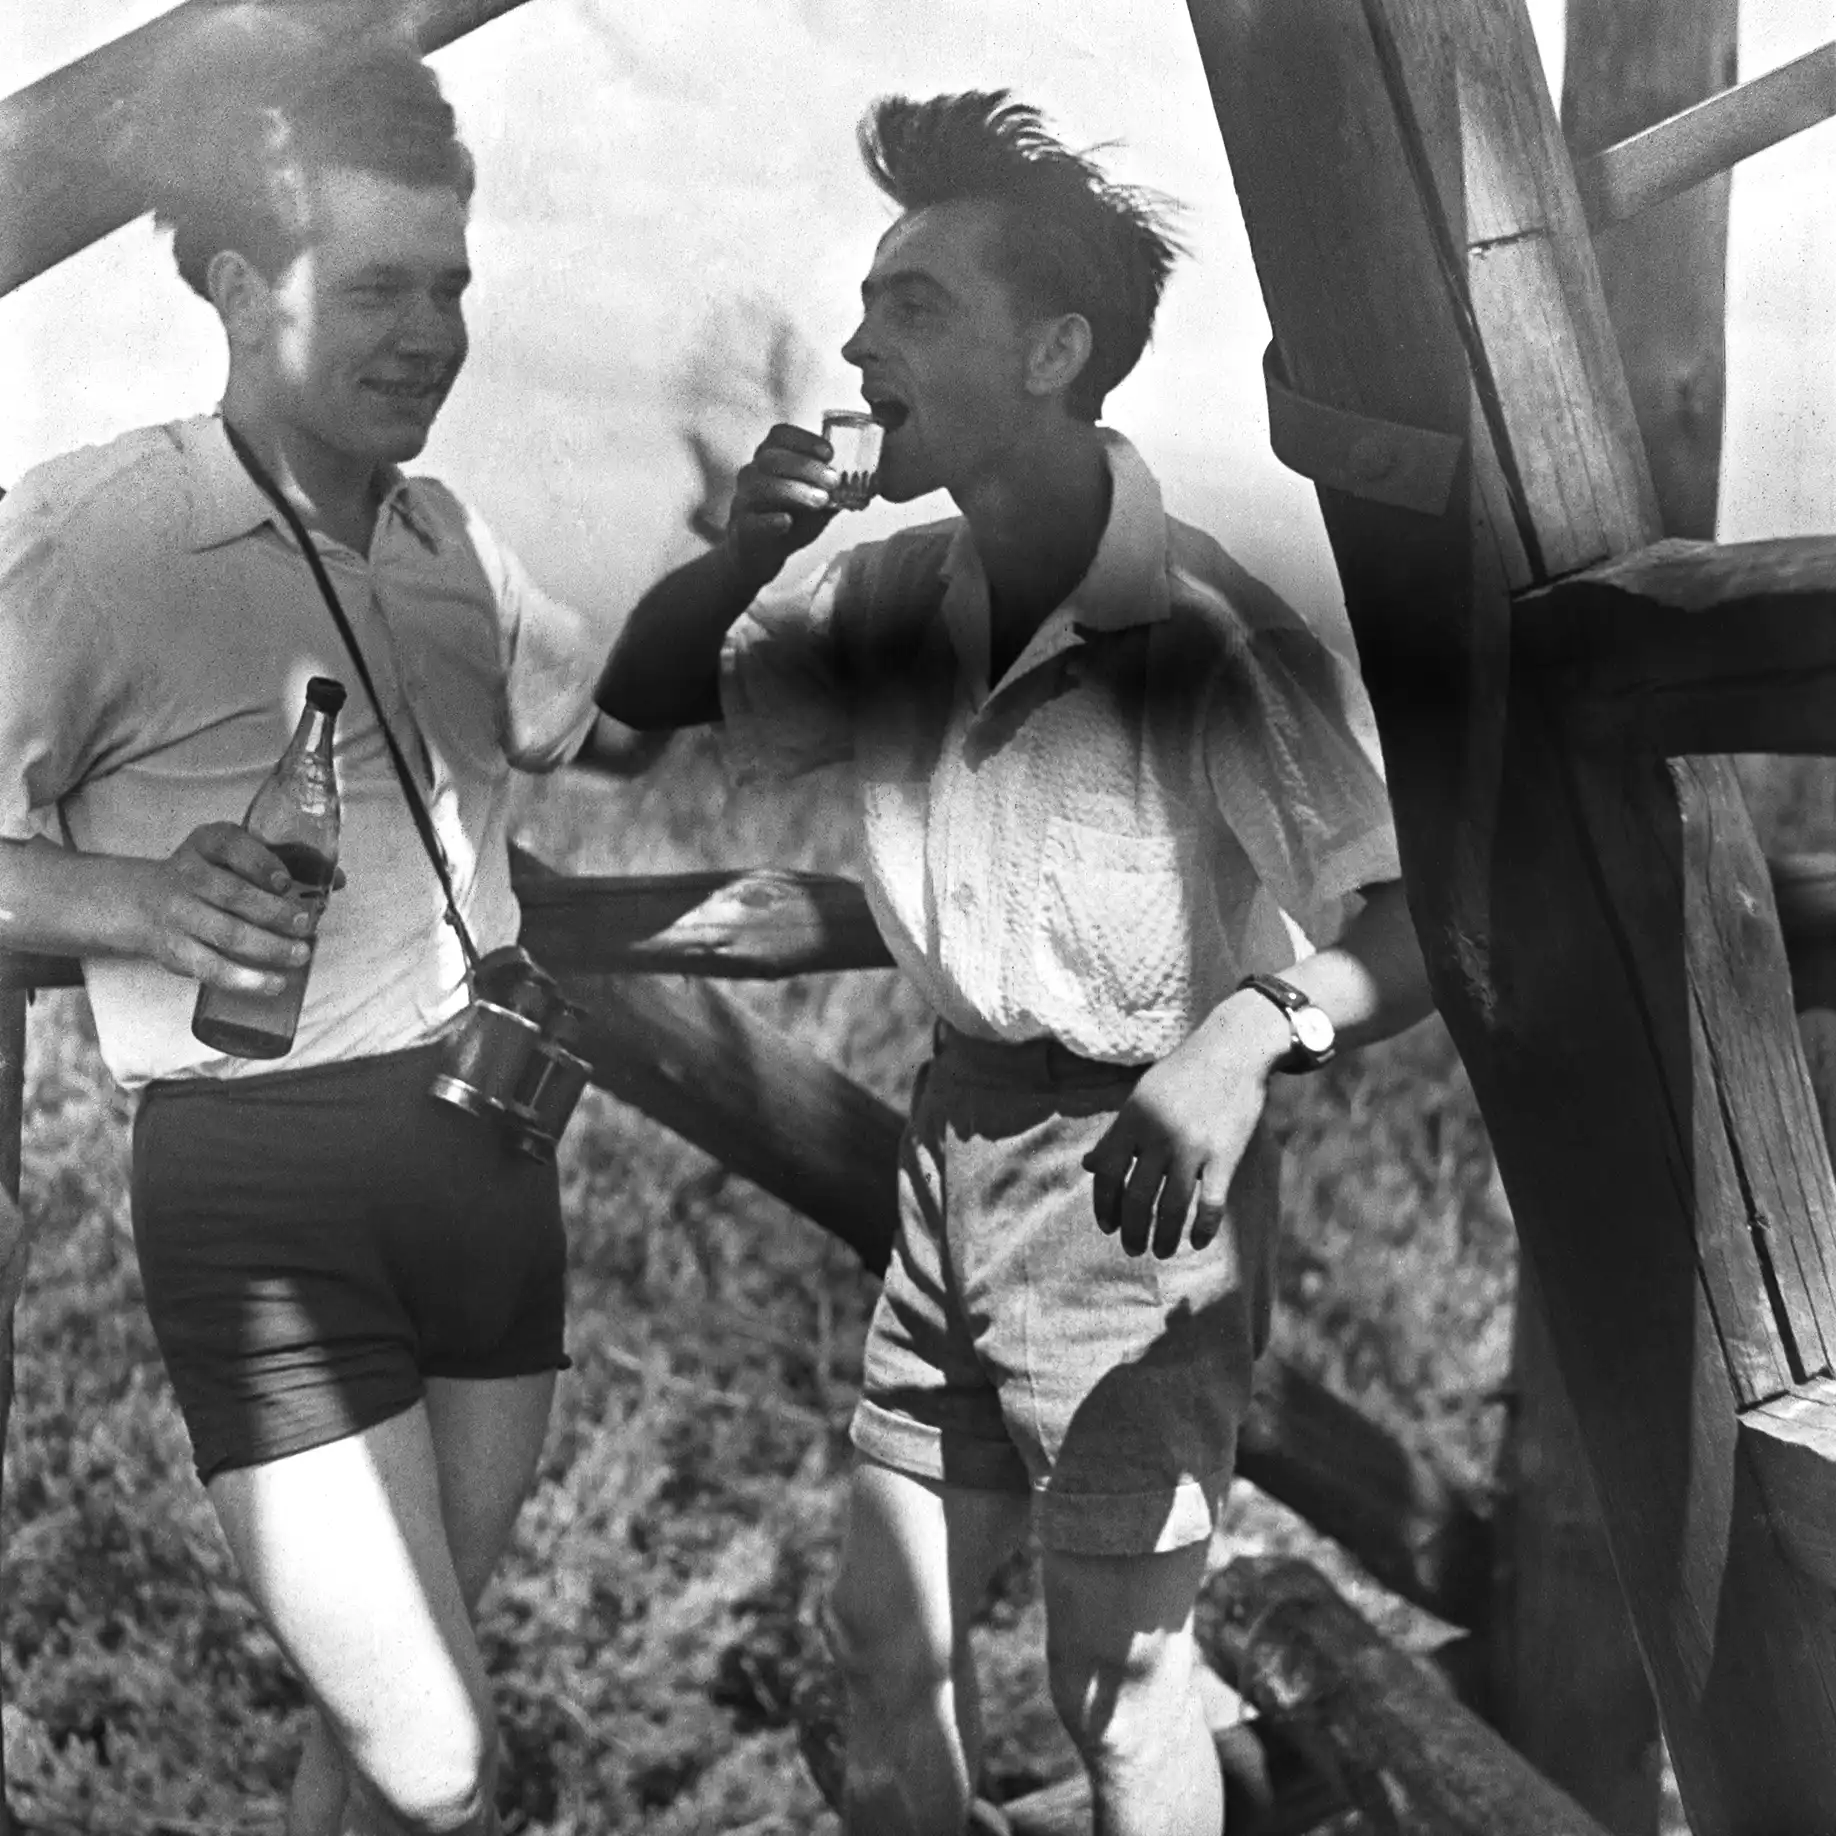 dwaj młodzi mężczyźni piją alkohol, w tle fragment konstrukcji drewnianej i pole uprawne